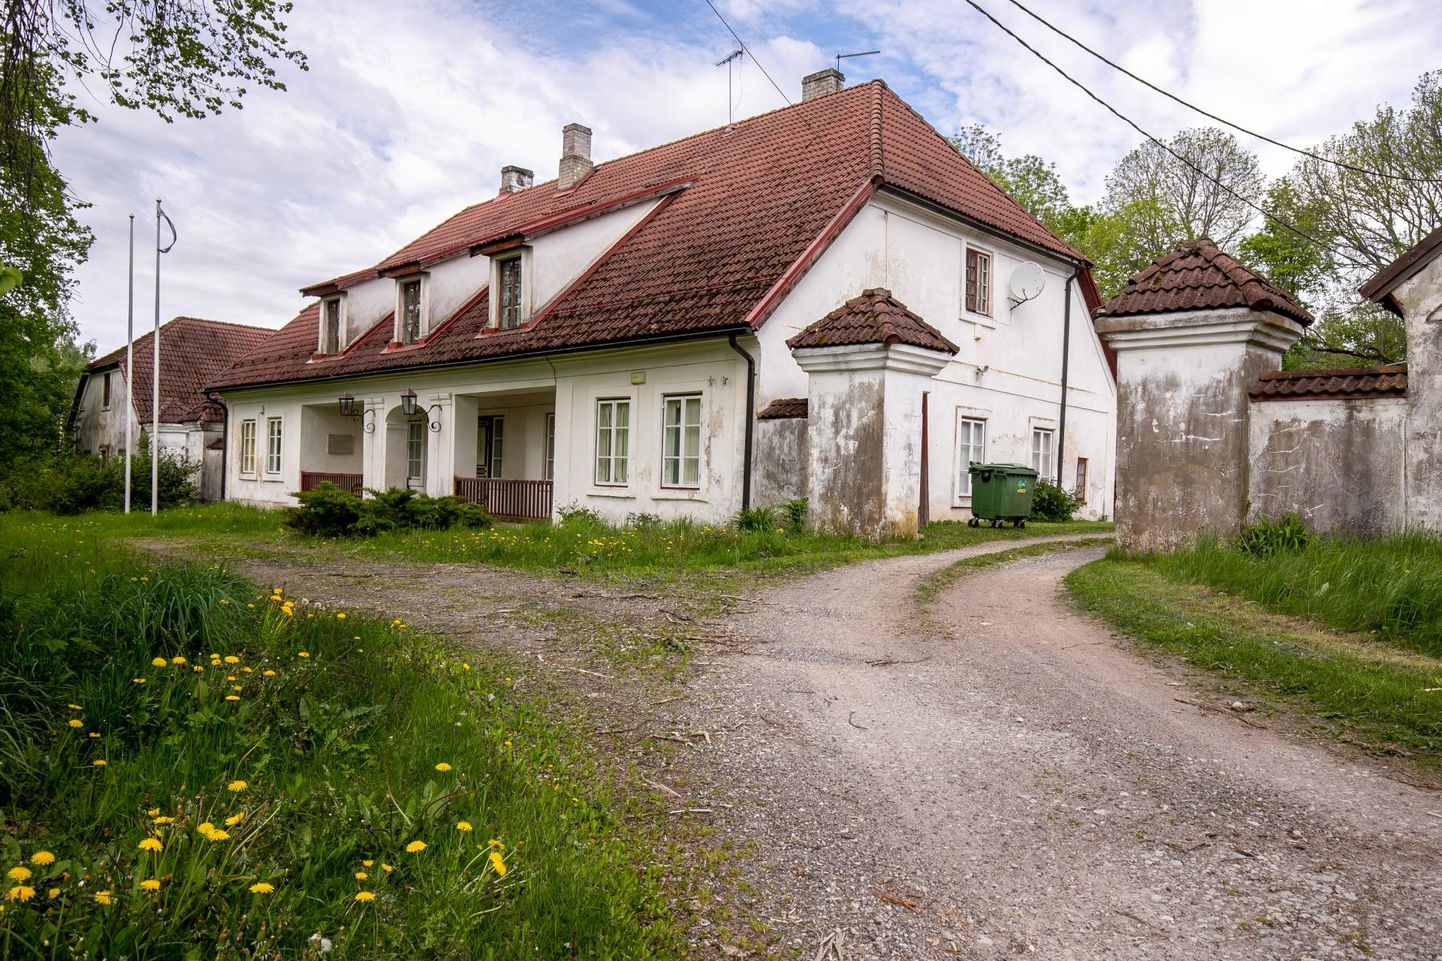 Saarde vallas Lodja külas ootab ärksat äri­mõtet ainukordne postijaam kõrvalhoonetega, mis valmisid 1800. aastal, kui avati Valmiera–Pärnu postimaantee.